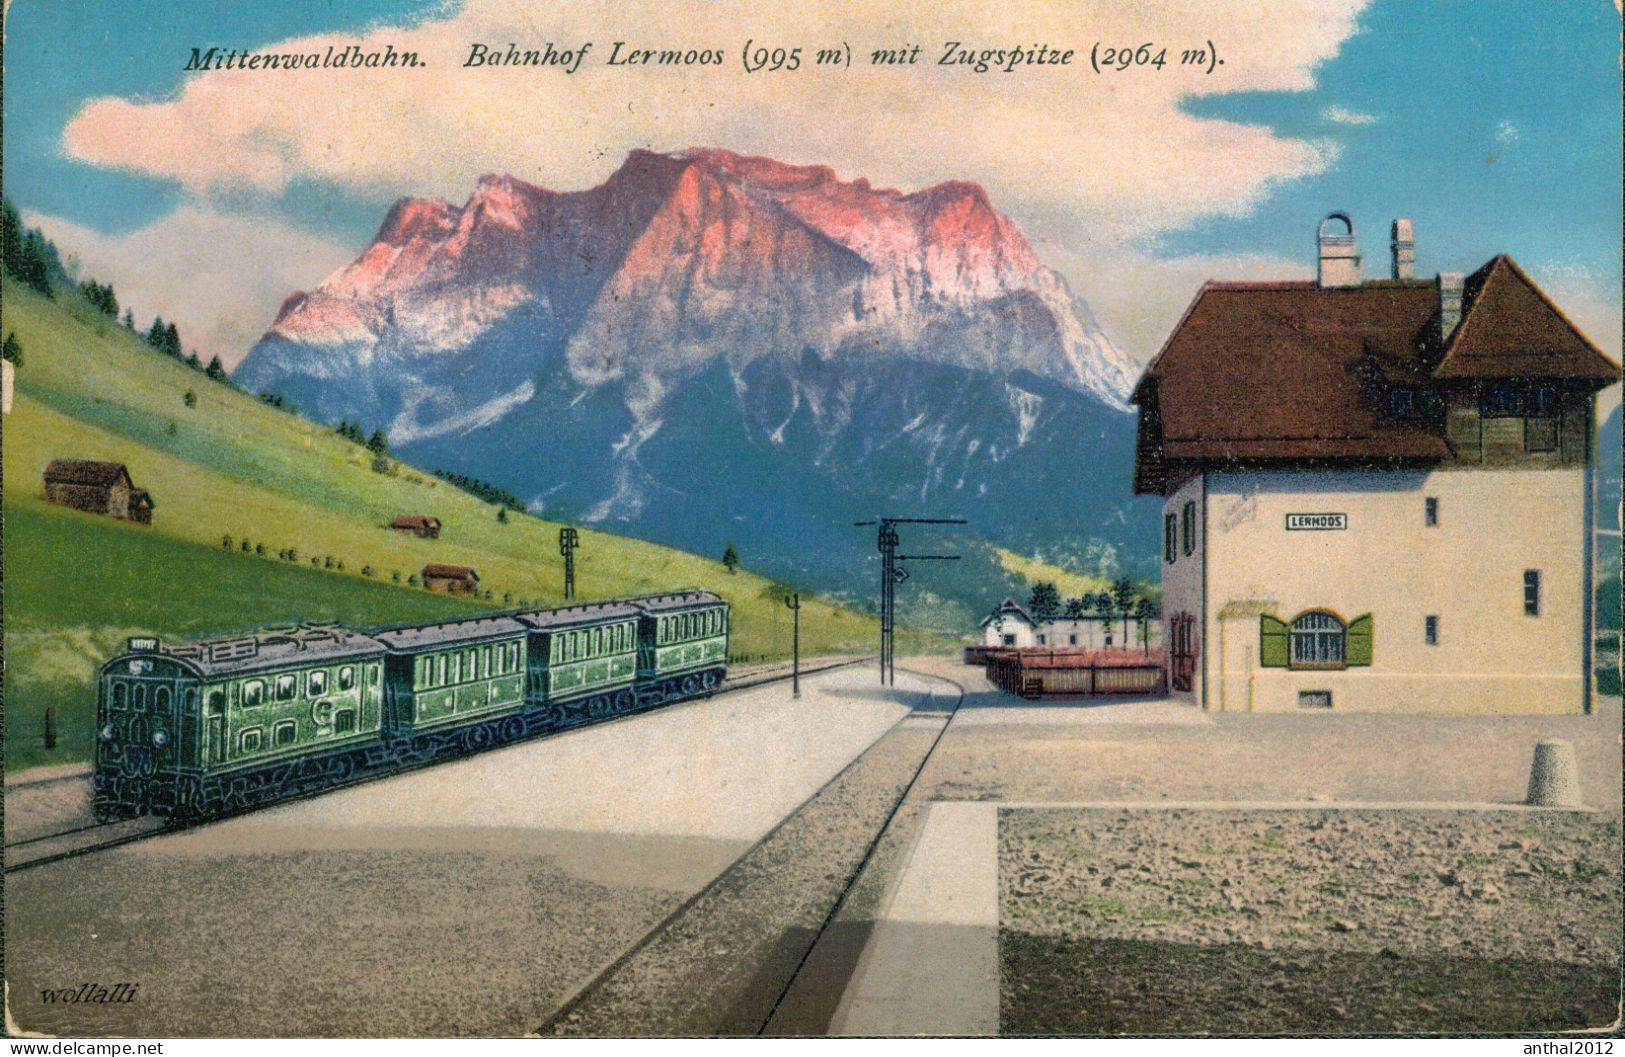 Superrar Bahnhof La Gare Lermoos Österreich Tirol Mit Zug 24.5.1921 Zugspitze - Estaciones Con Trenes